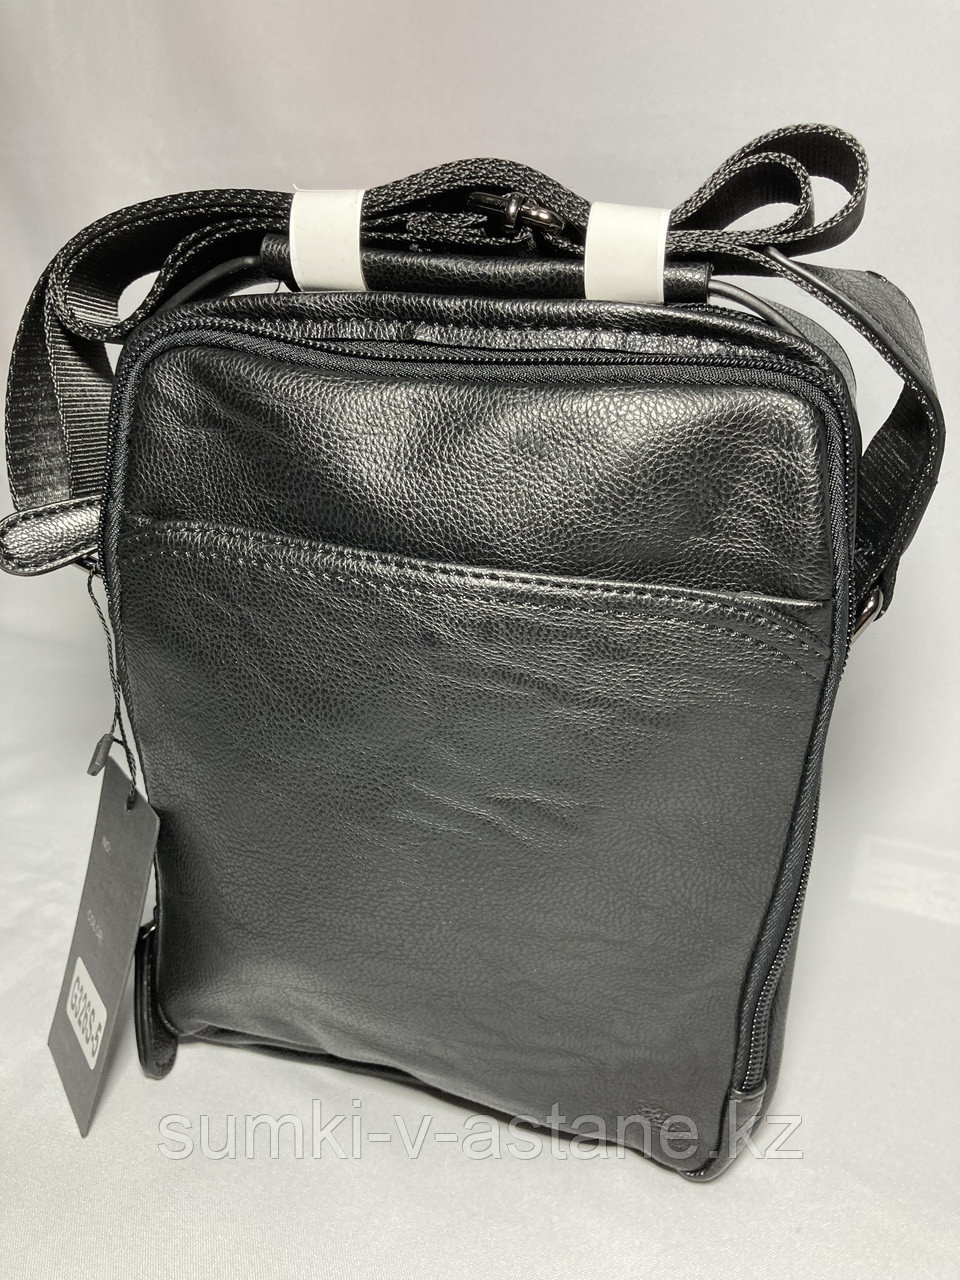 Мужская сумка через плечо "Cantlor" (высота 24 см, ширина 20 см, глубина 5 см)